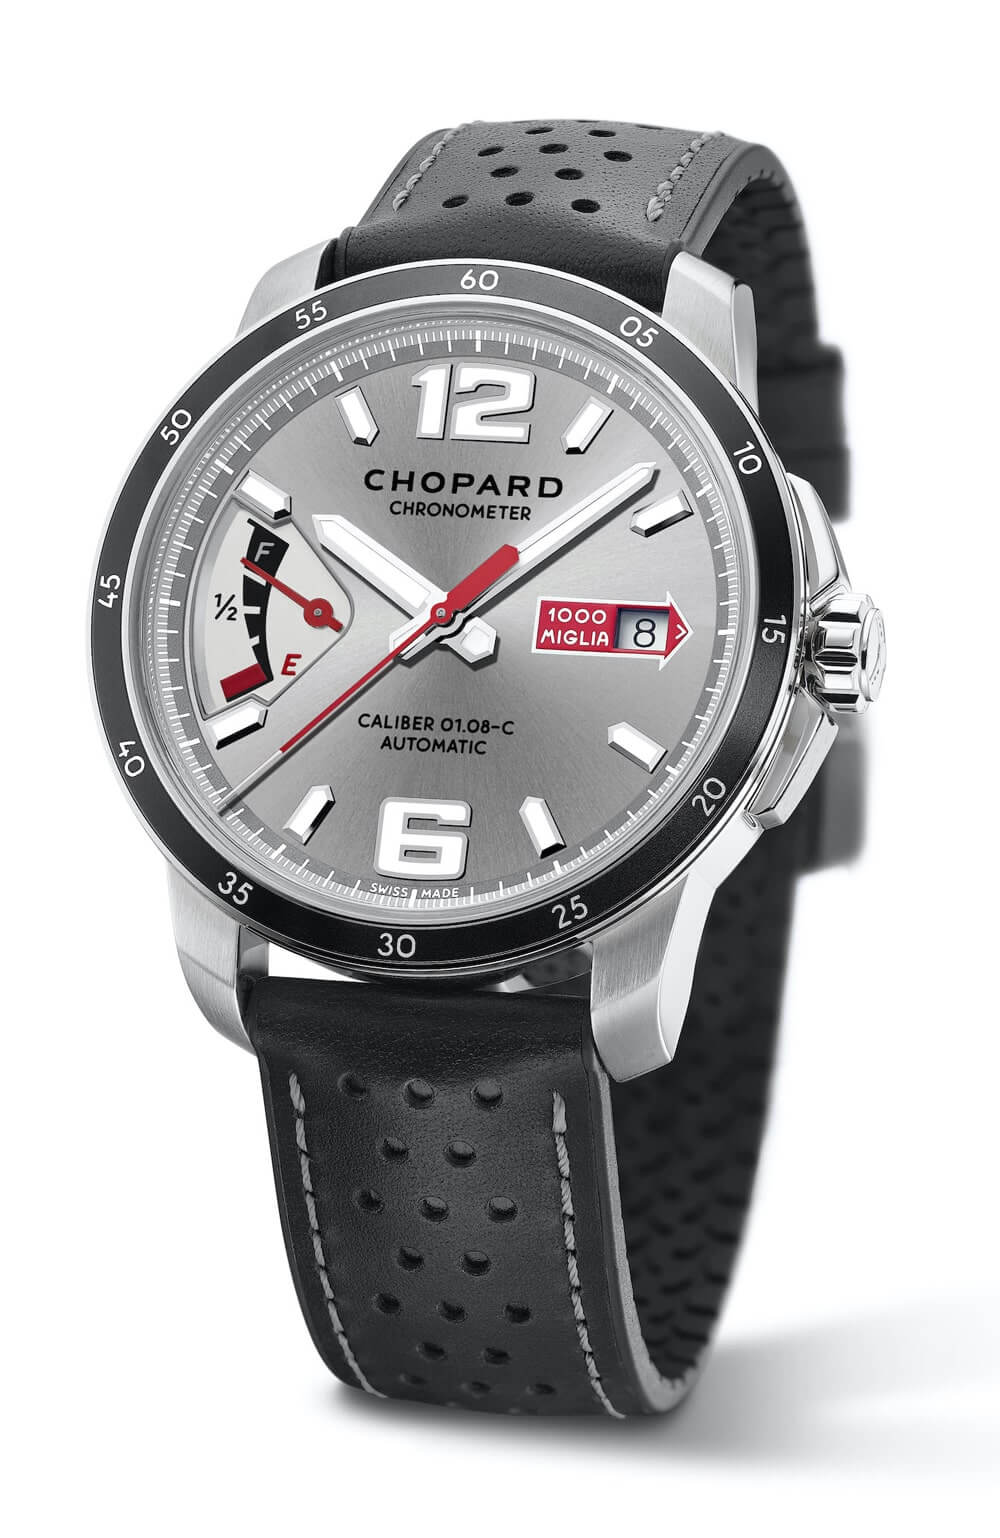 Chopard представил вторую коллекцию часов Mille Miglia GTS Luftgekühlt Edition в честь партнерства с ежегодной выставкой Luftgekühlt